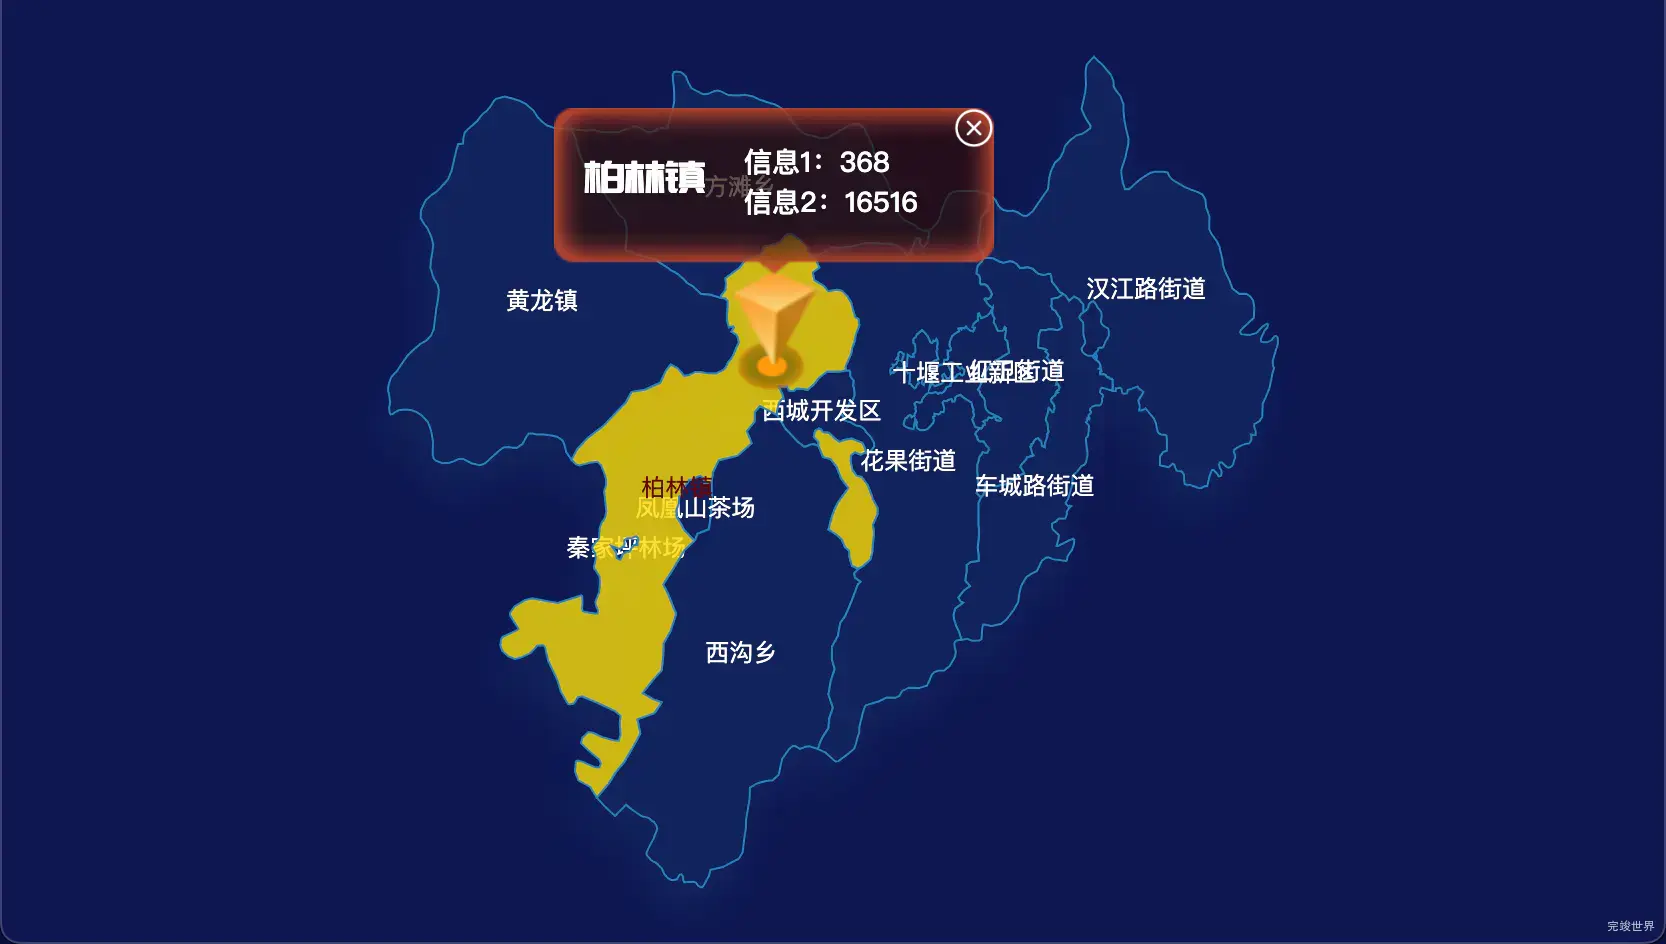 21 echarts 十堰市张湾区geoJson地图点击弹出自定义弹窗